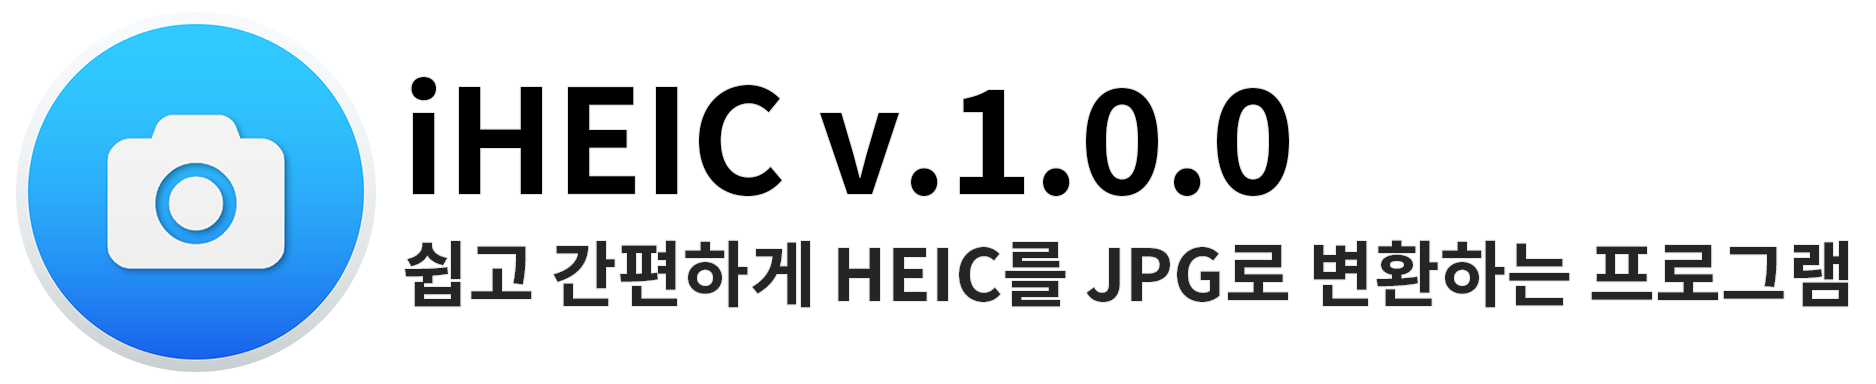 iHEIC v1.0.0